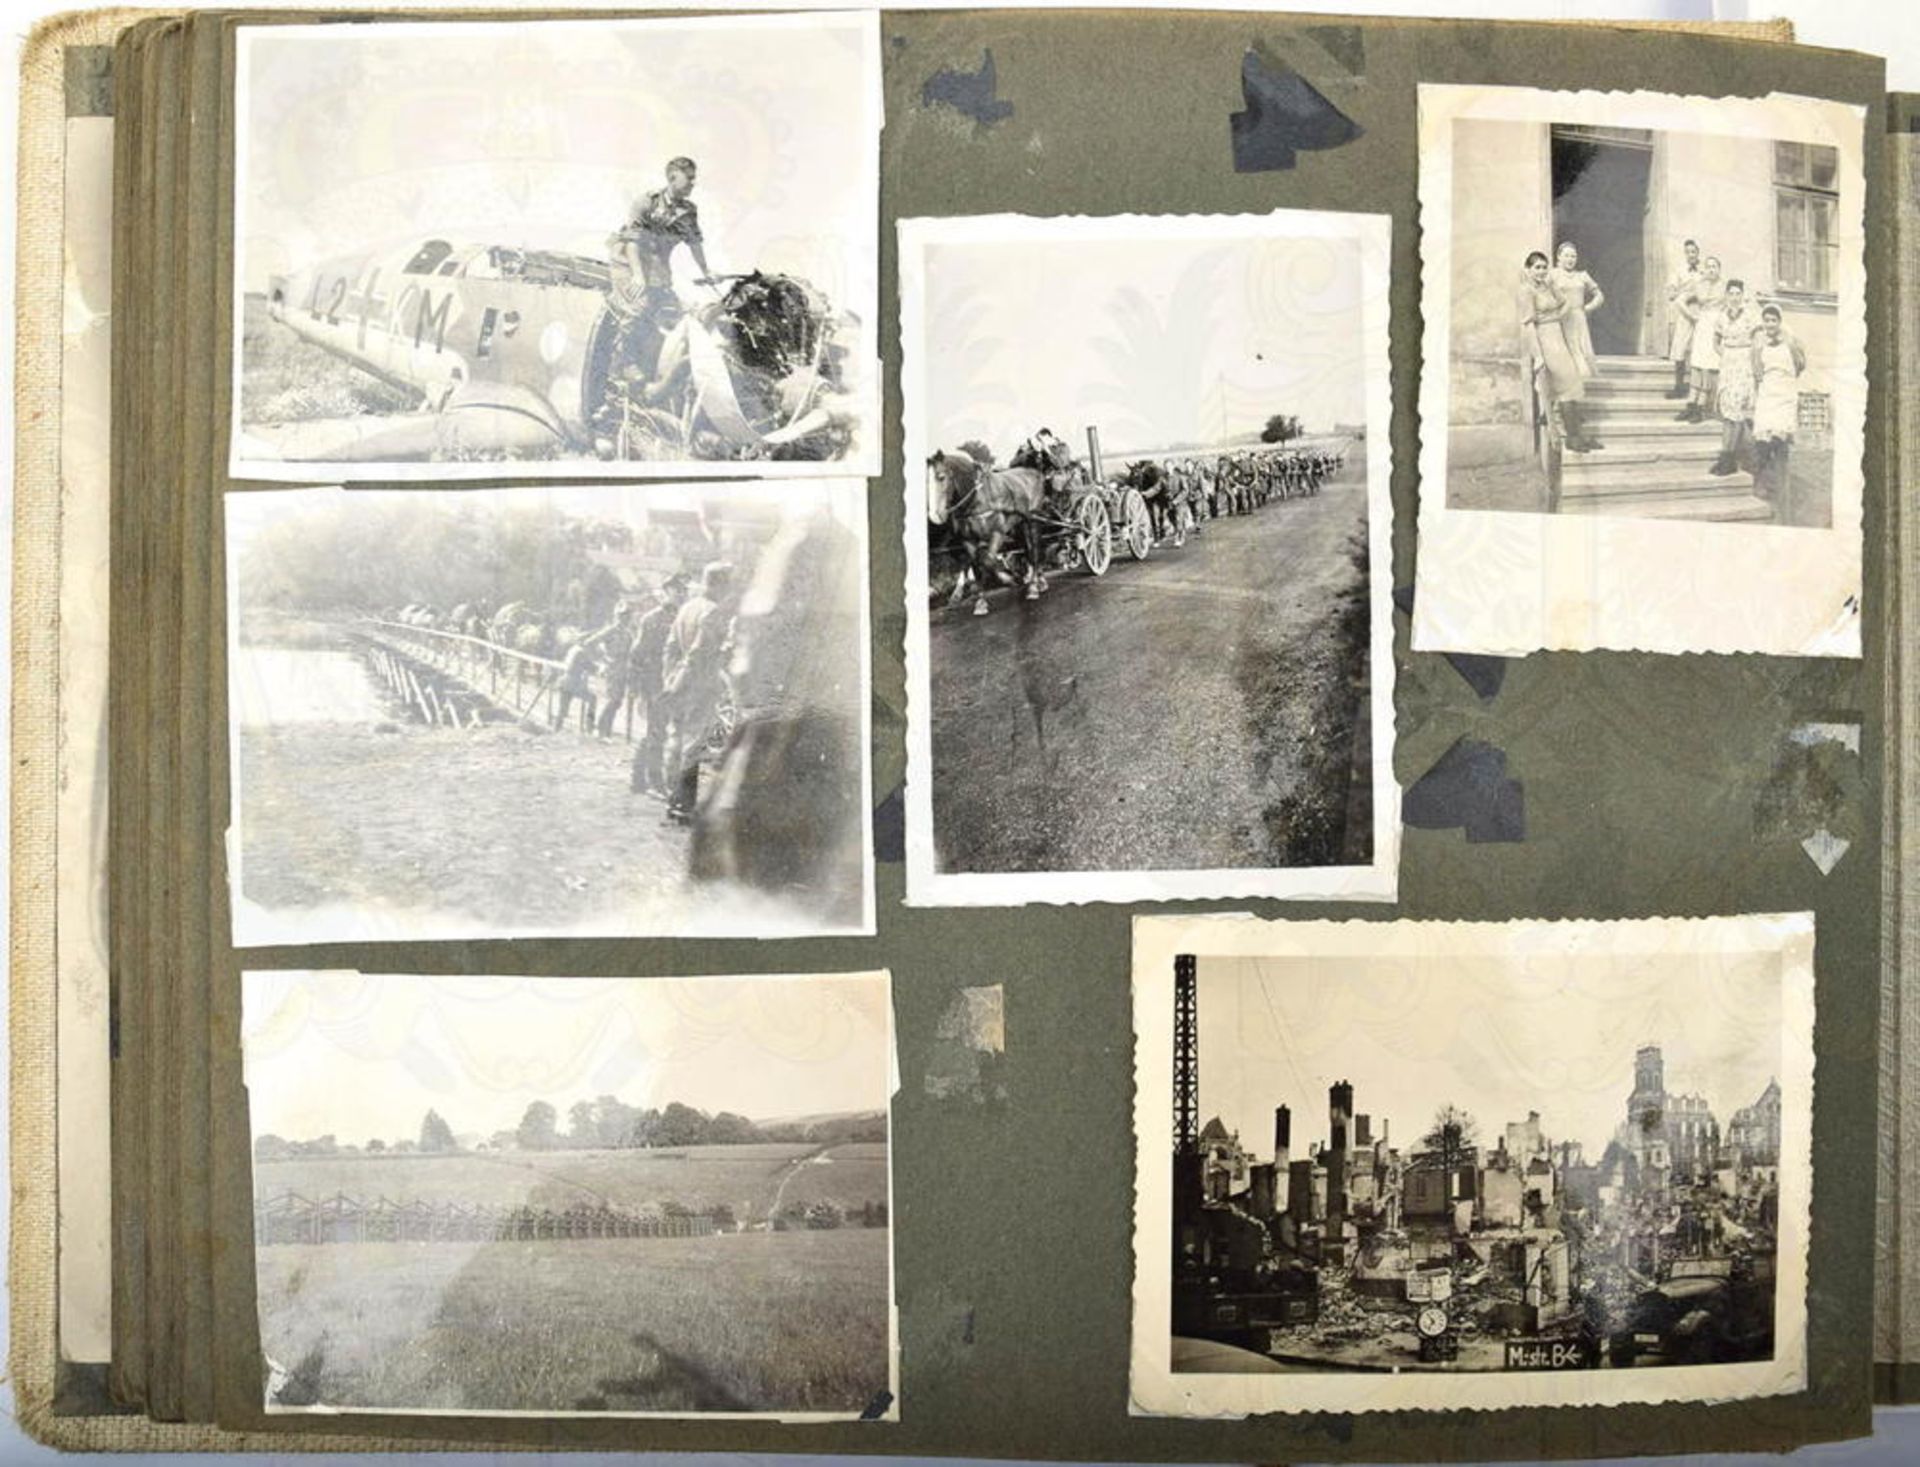 FOTOALBUM GEFREITER DES HEERES aus Graz/Ostmark, mit 140 Fotos u. 17 AK, 1939- 1941, Westfeldzug, ze - Bild 2 aus 4